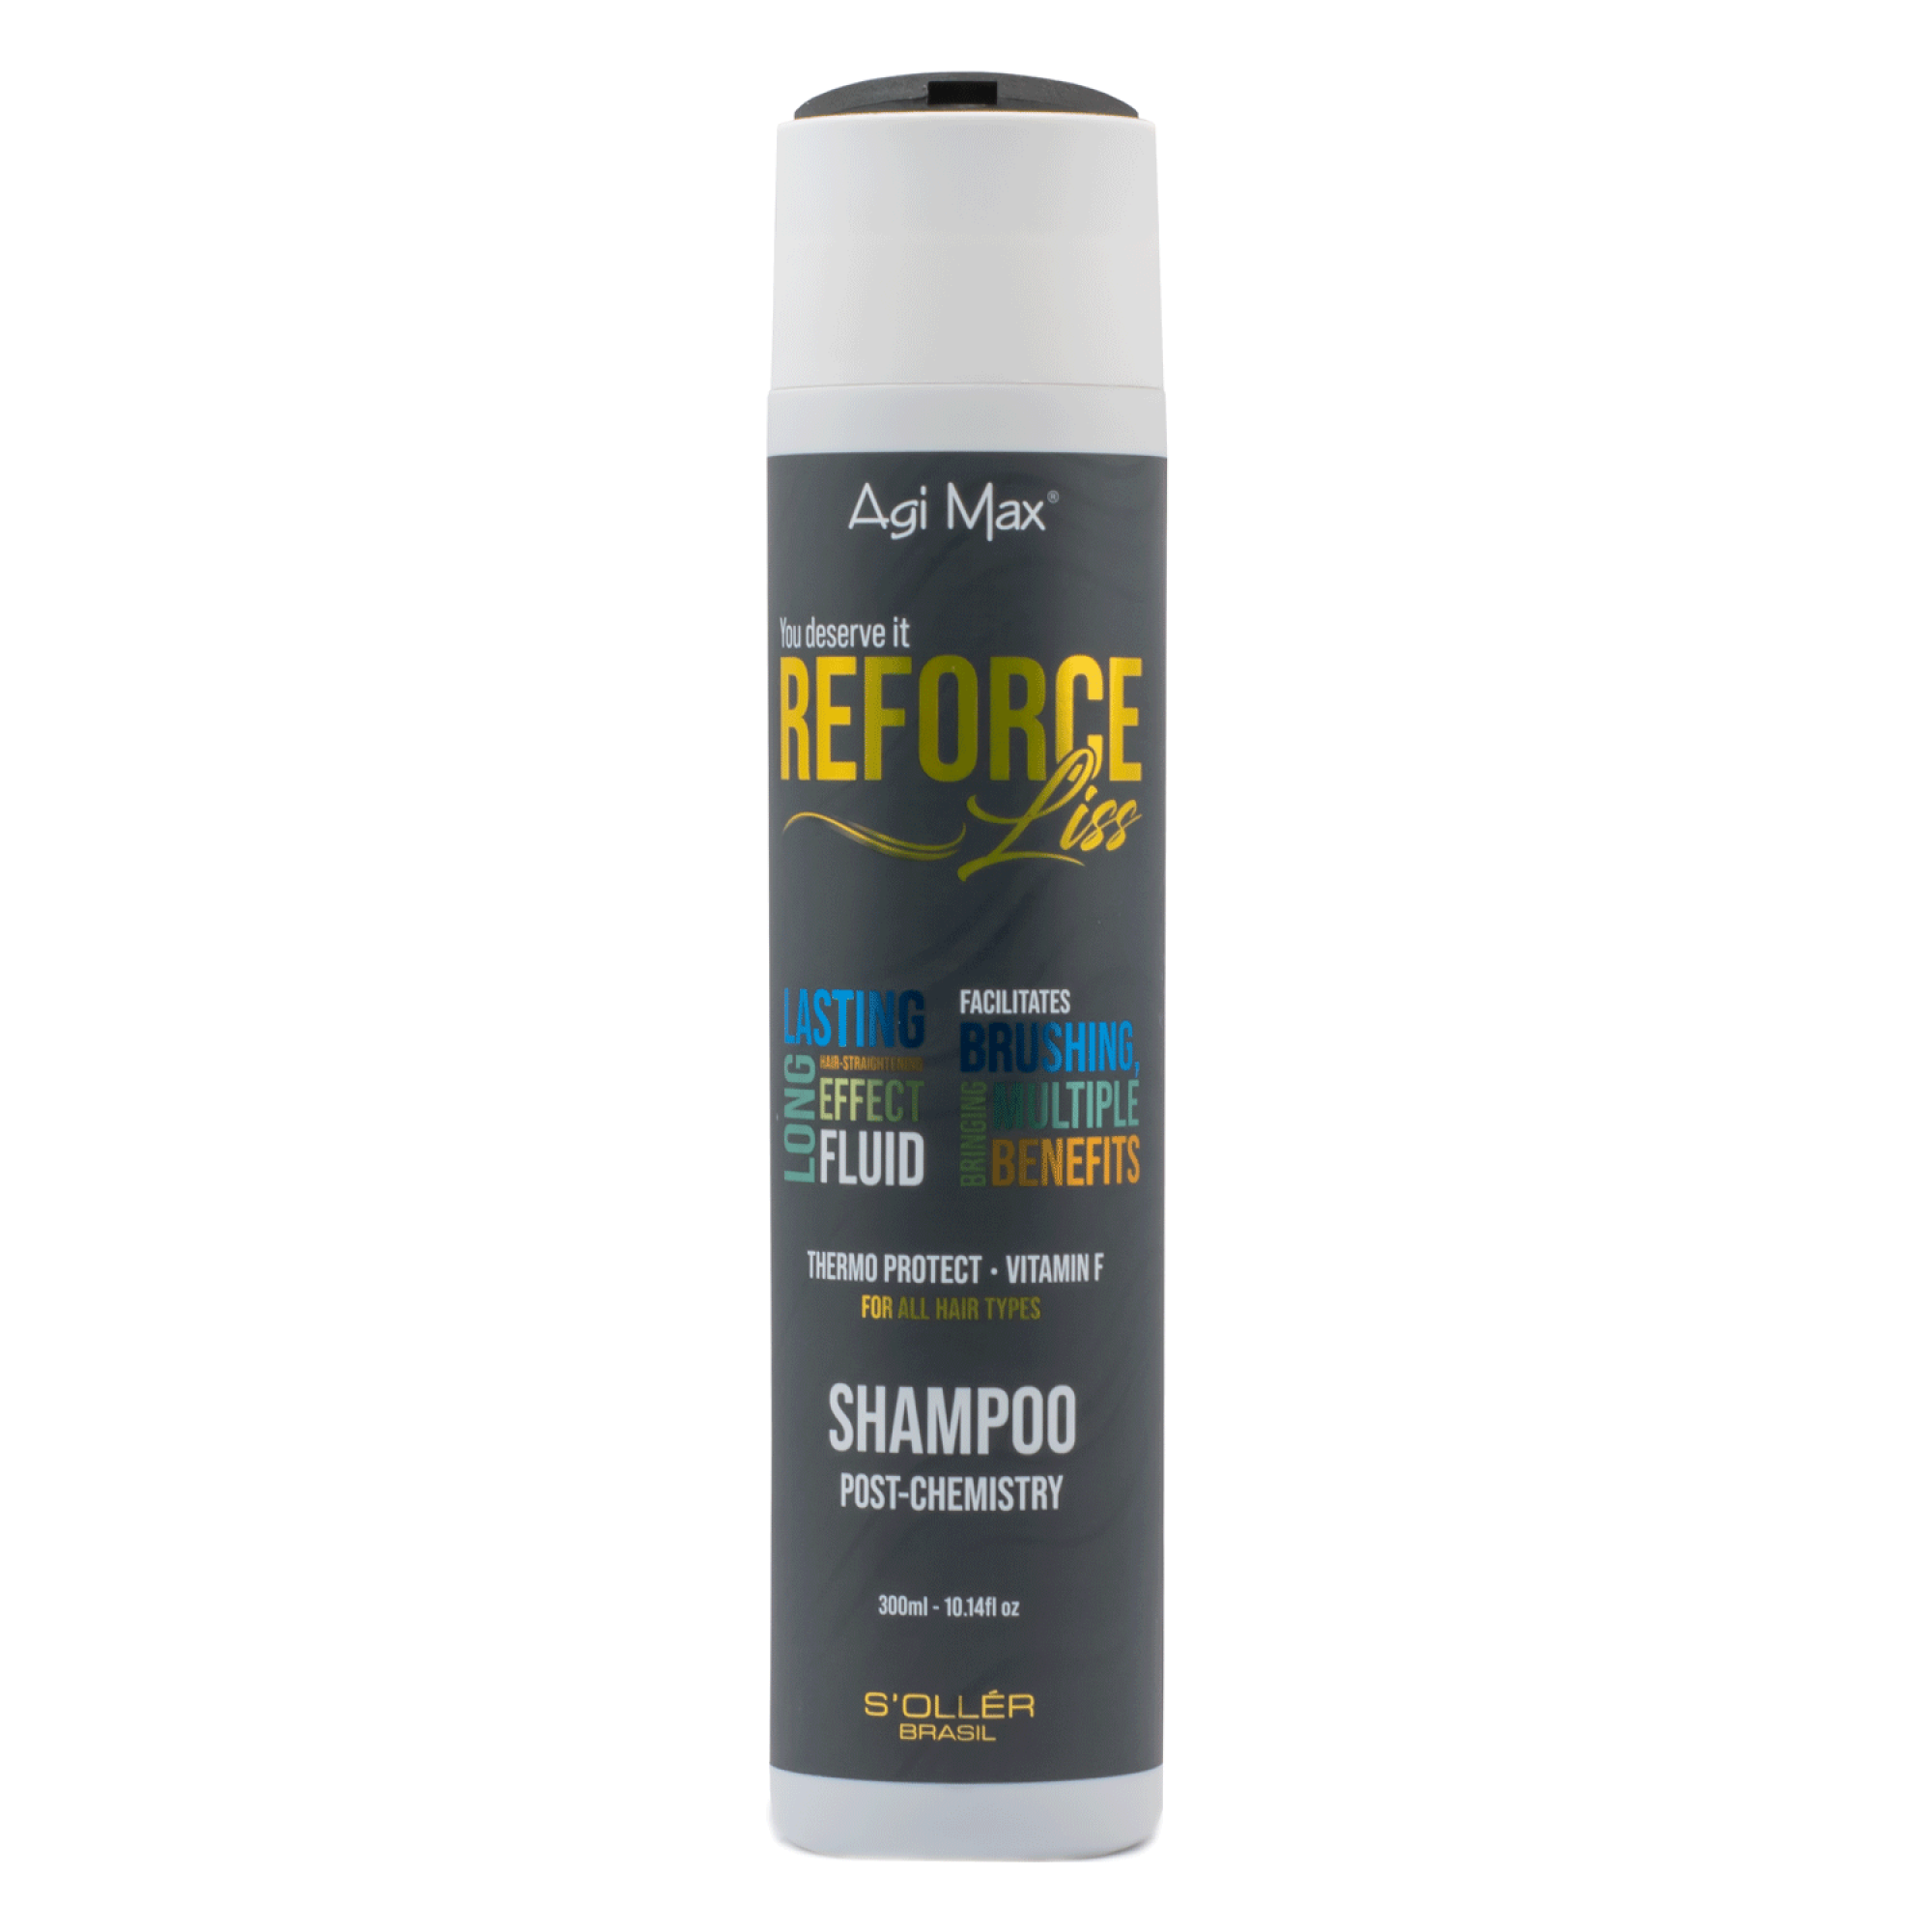 Produto SHAMPOO REFORCE LISS | Coleção Reforce Liss